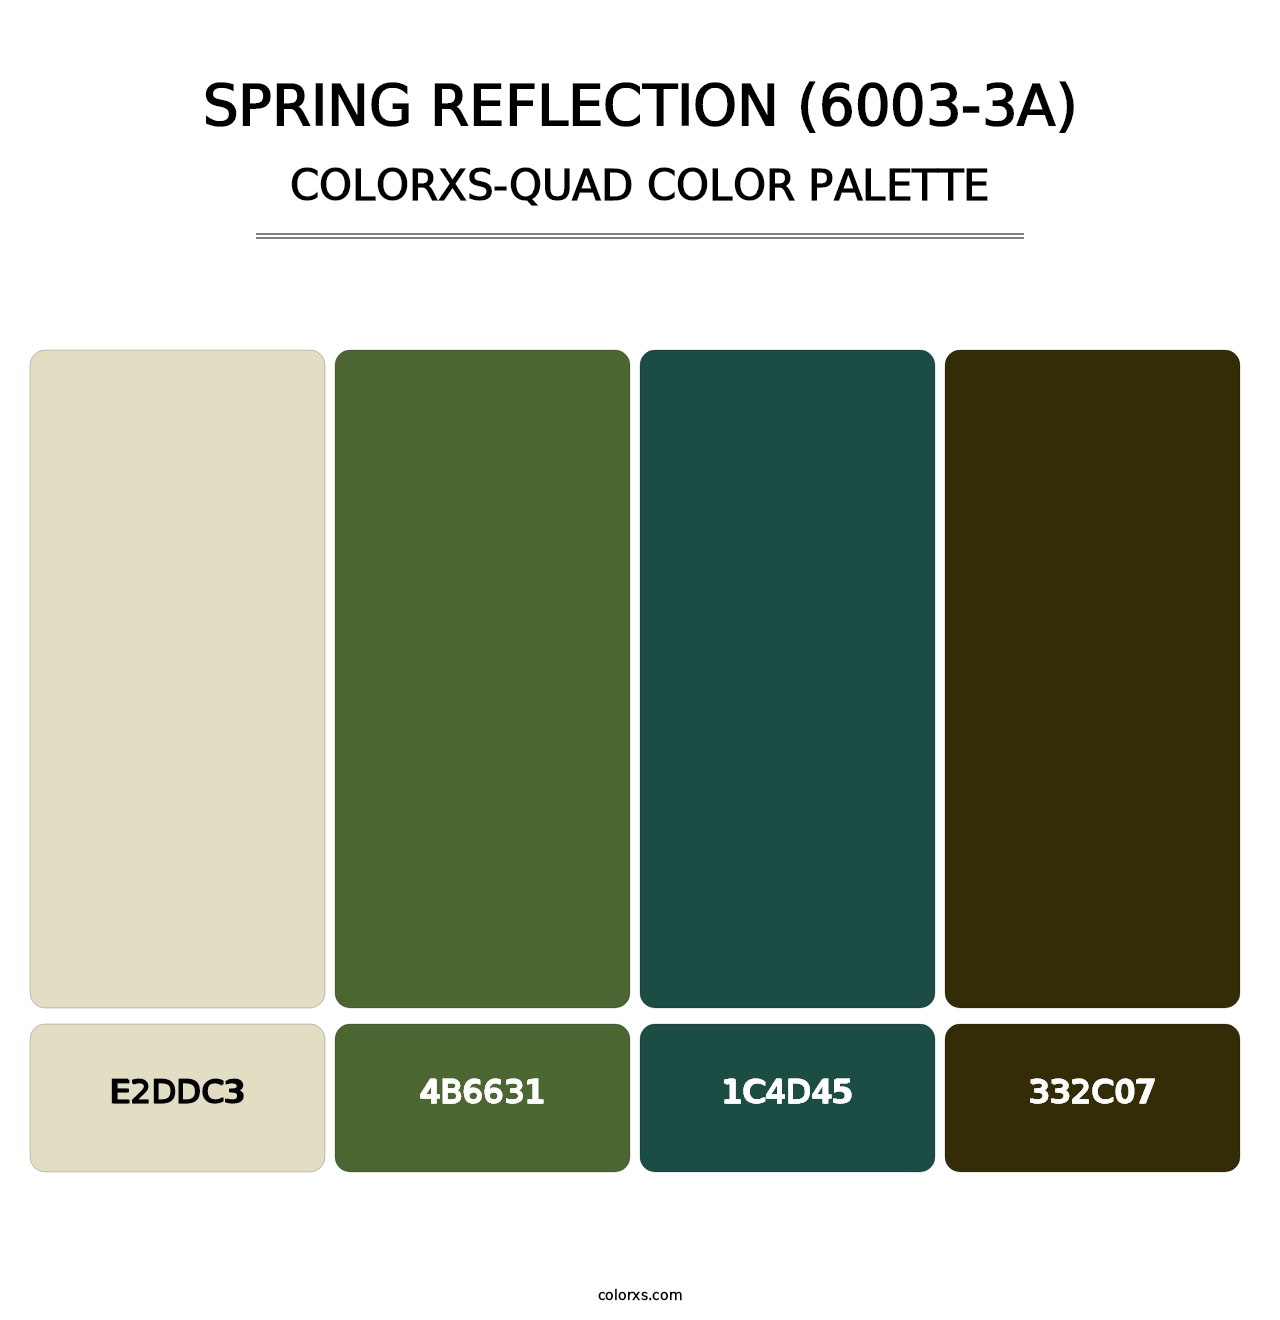 Spring Reflection (6003-3A) - Colorxs Quad Palette